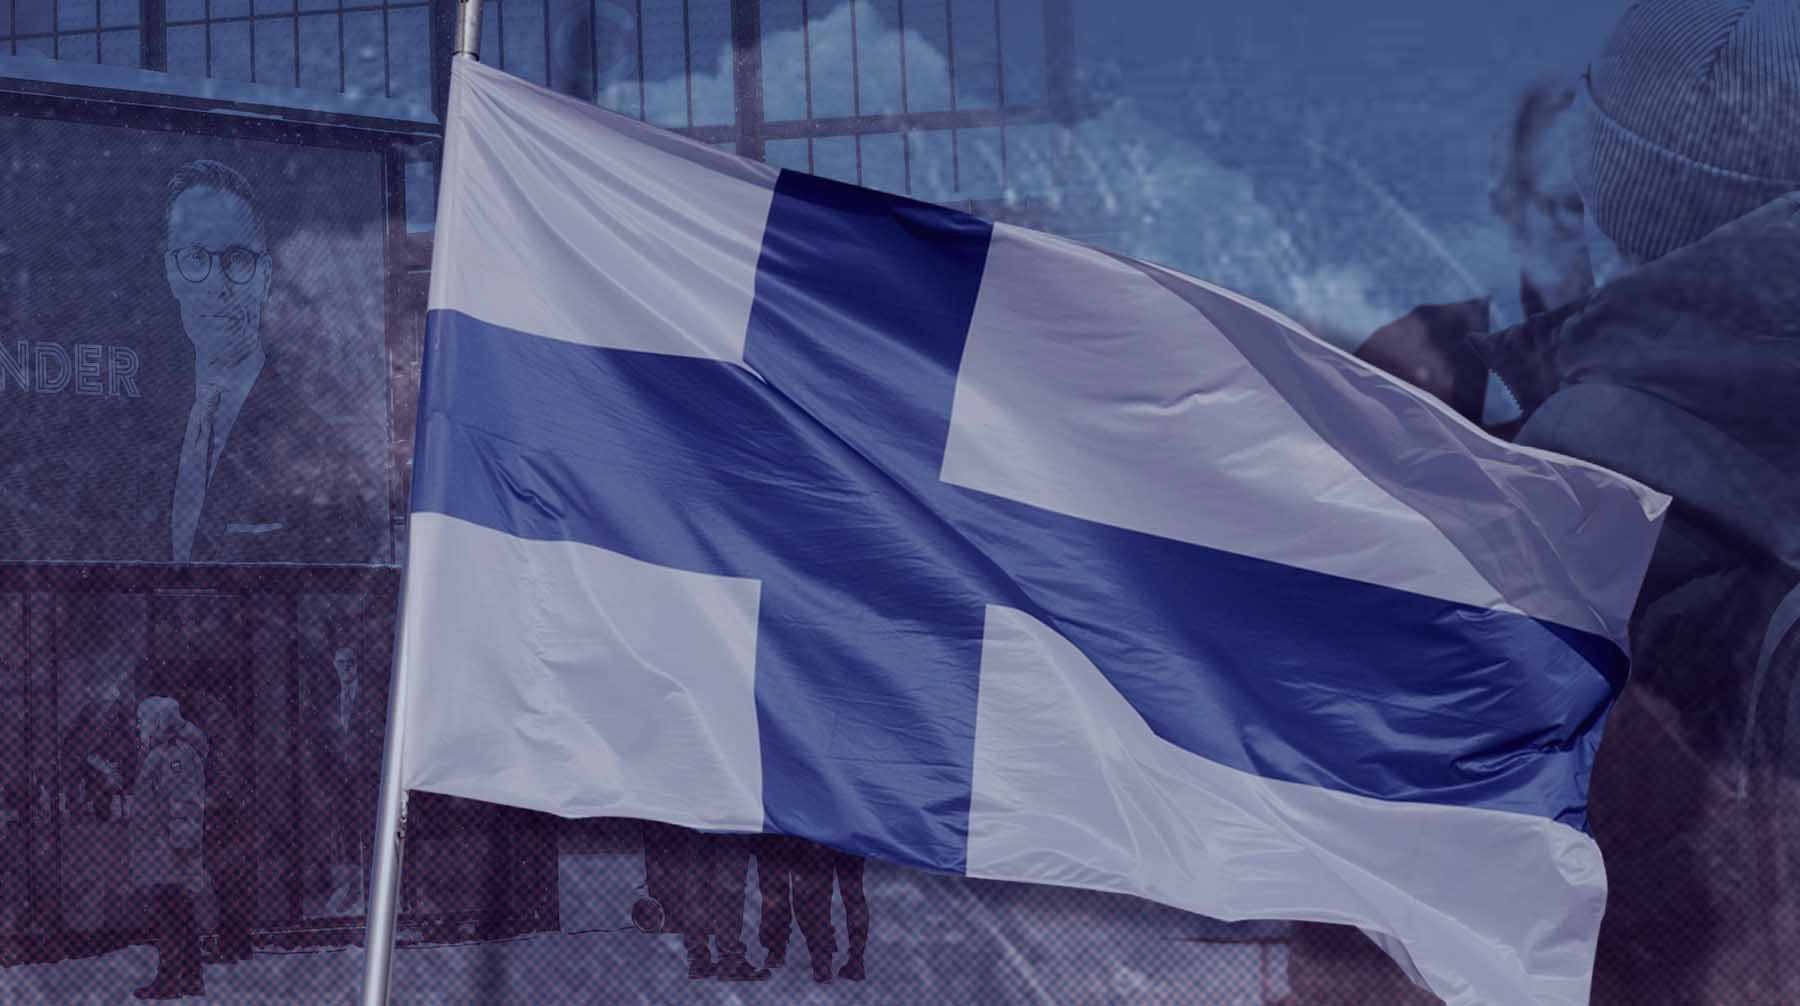 Dailystorm - «Будем рассчитывать, что здравый смысл победит политические экстримы»: в Совфеде рассказали, на что надеются в отношениях РФ с новым президентом Финляндии